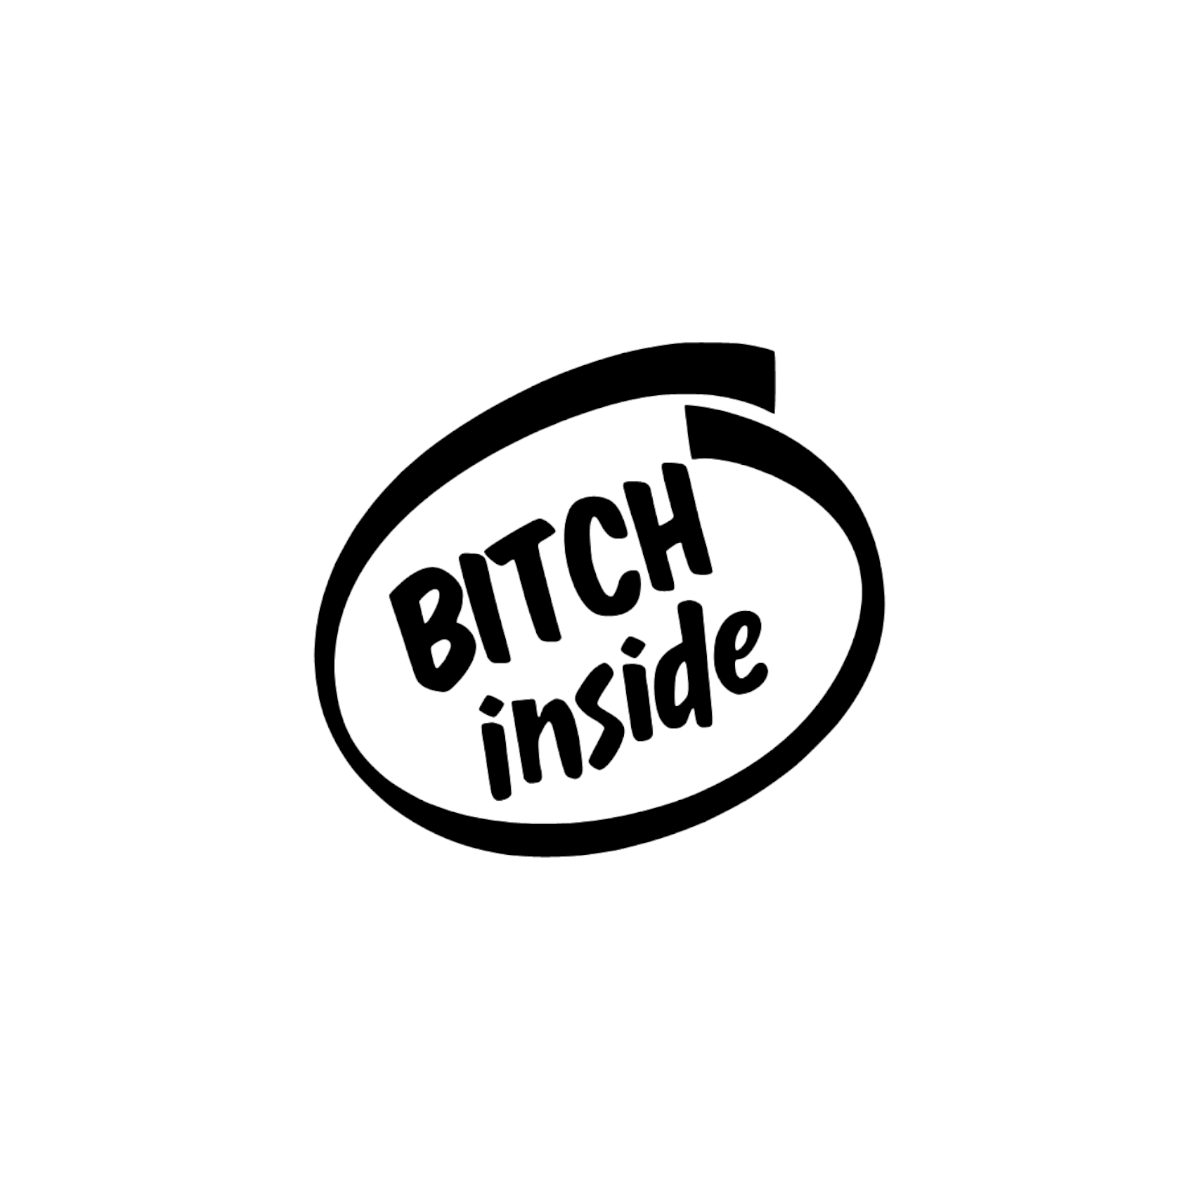 Dekal Bitch inside